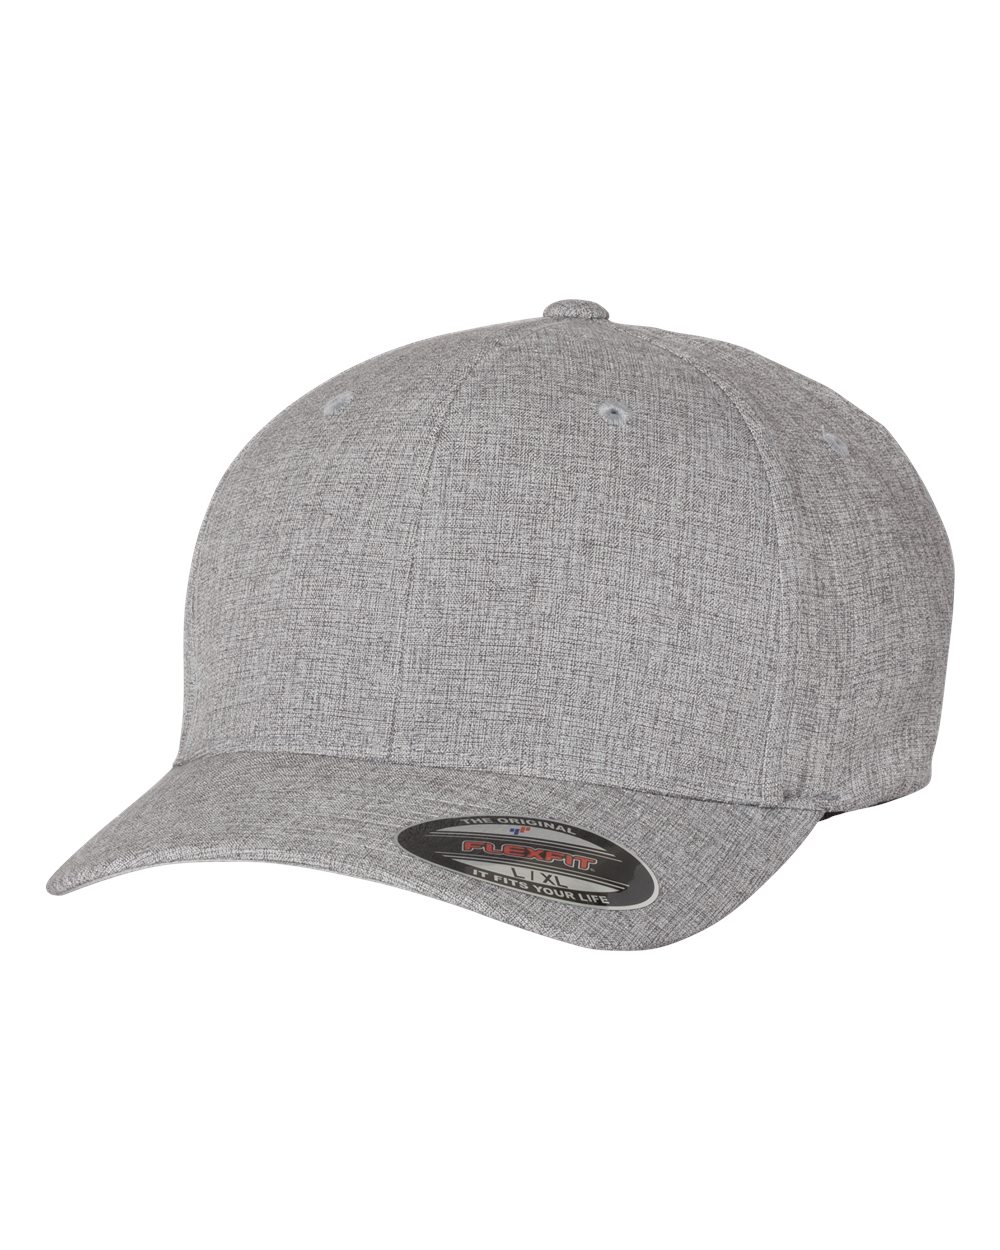 Cap Headwear Flexfit - 6350 Heatherlight - $8.39 Melange